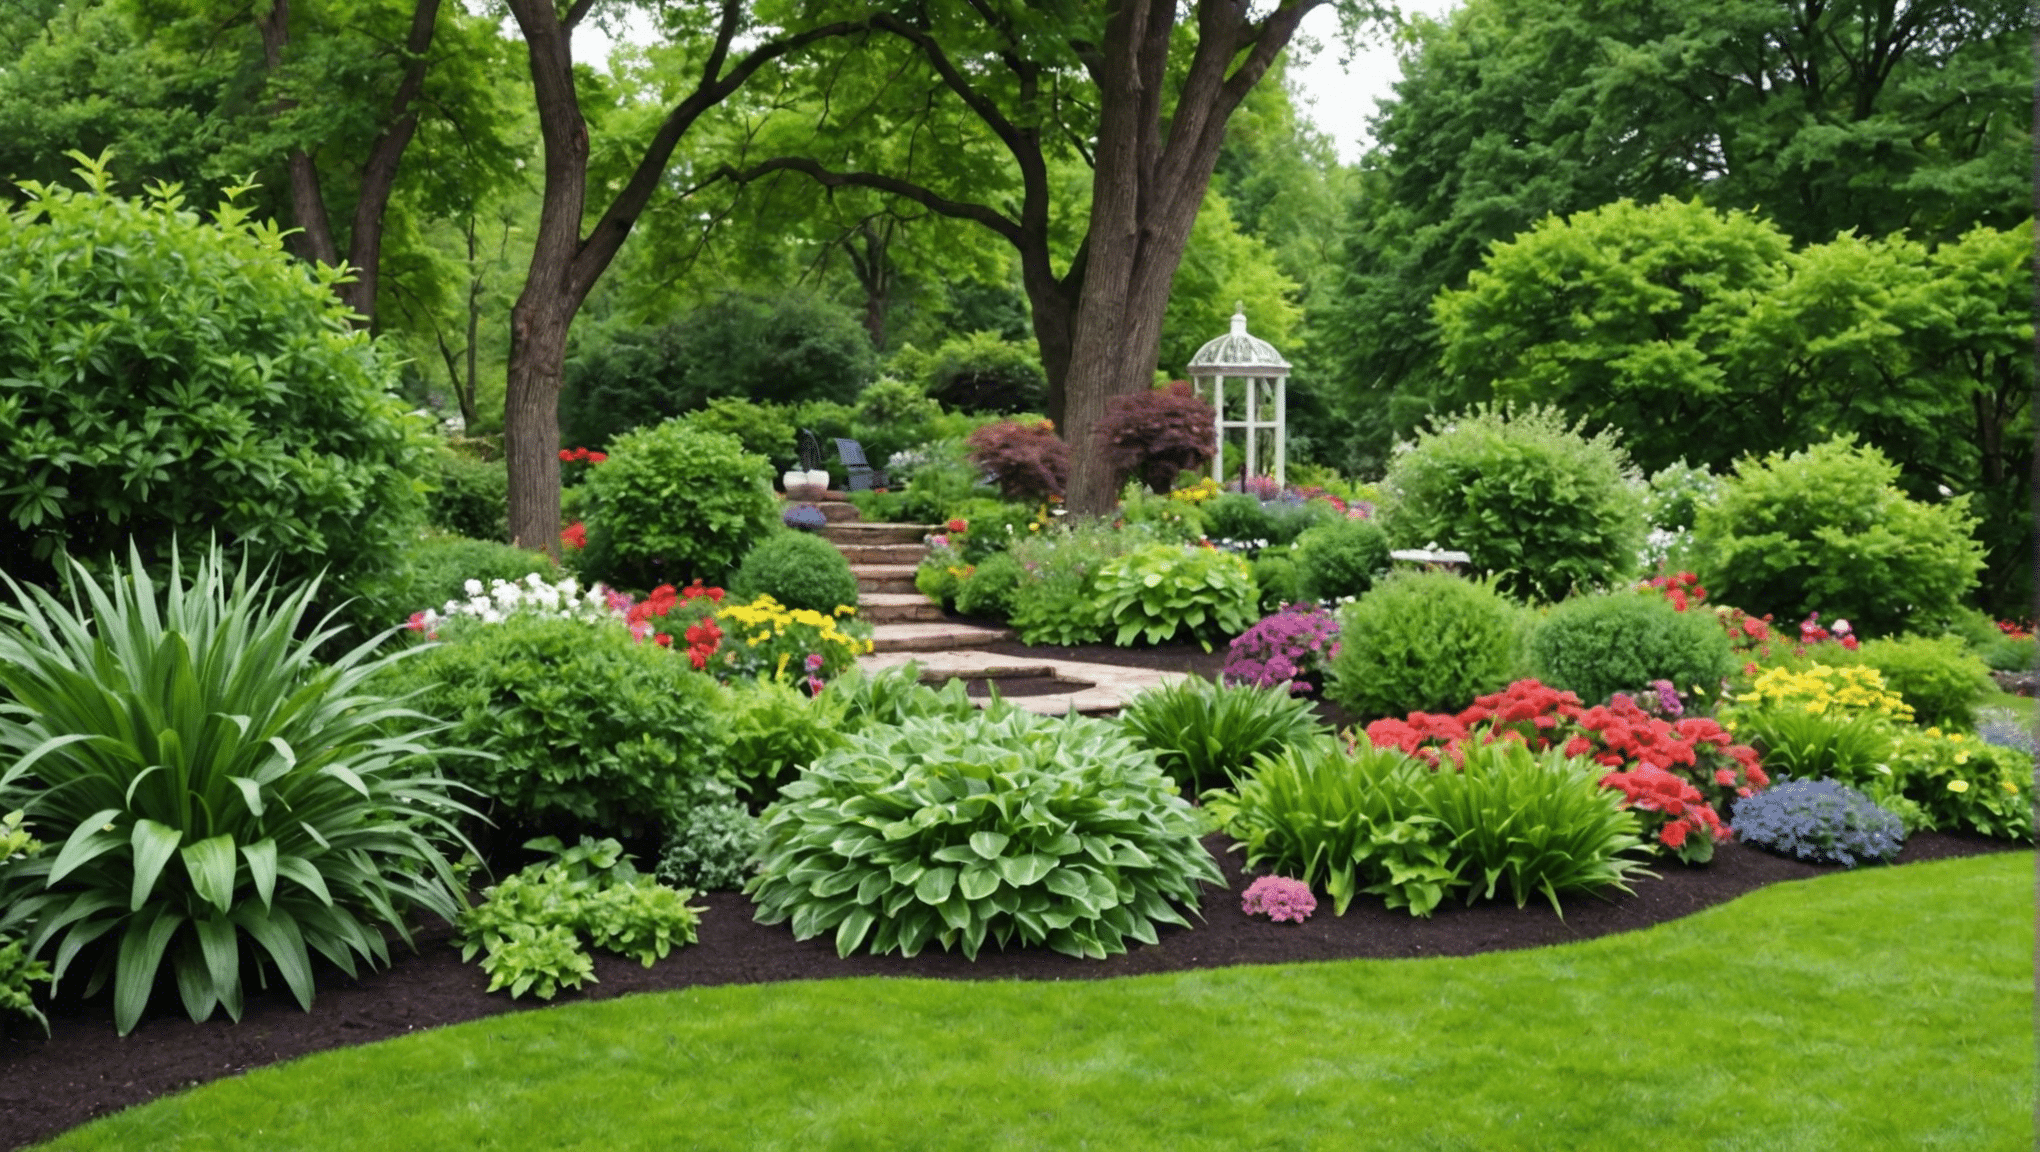 scopri ottimi libri sul giardinaggio per principianti e apprendi gli elementi essenziali per avviare un giardino con i nostri migliori consigli.